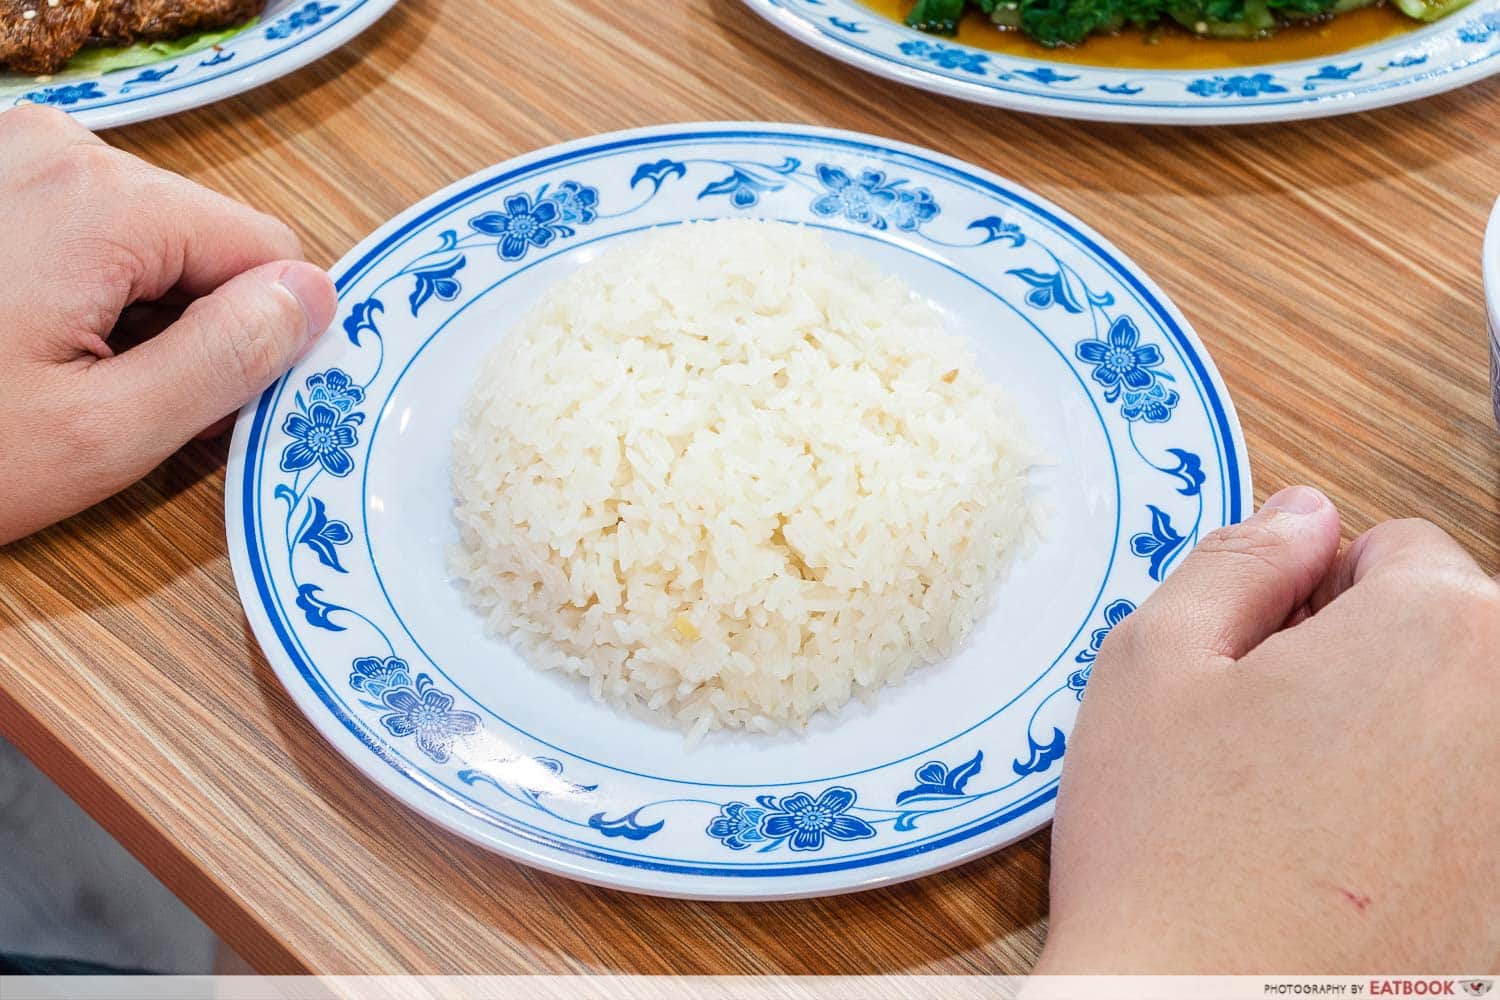 Chicken rice intro shot